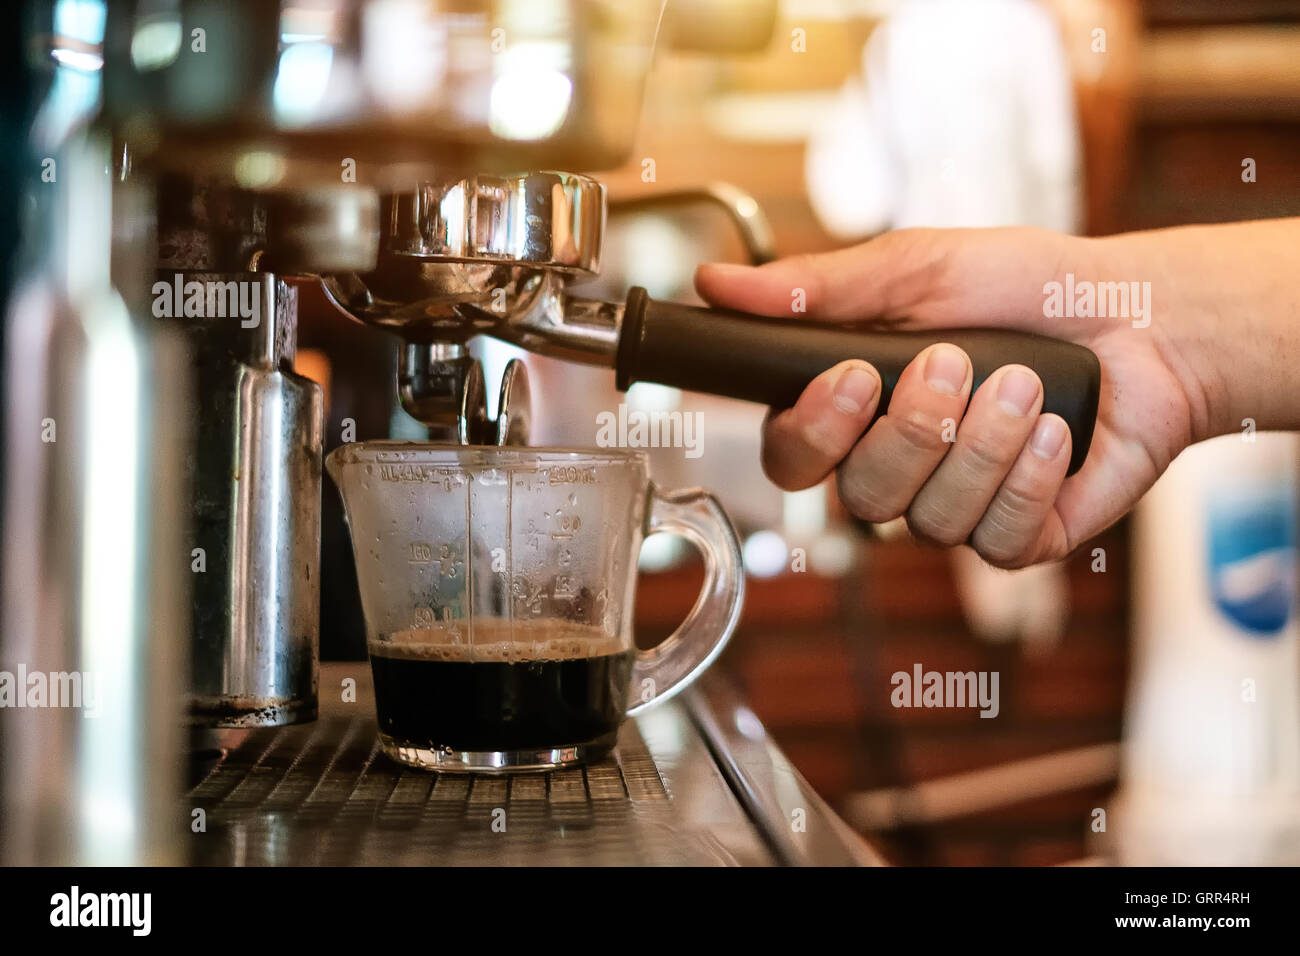 Cup und professionelle Espresso-Maschine in eine keramische Tasse frischen Kaffee gießen Stockfoto